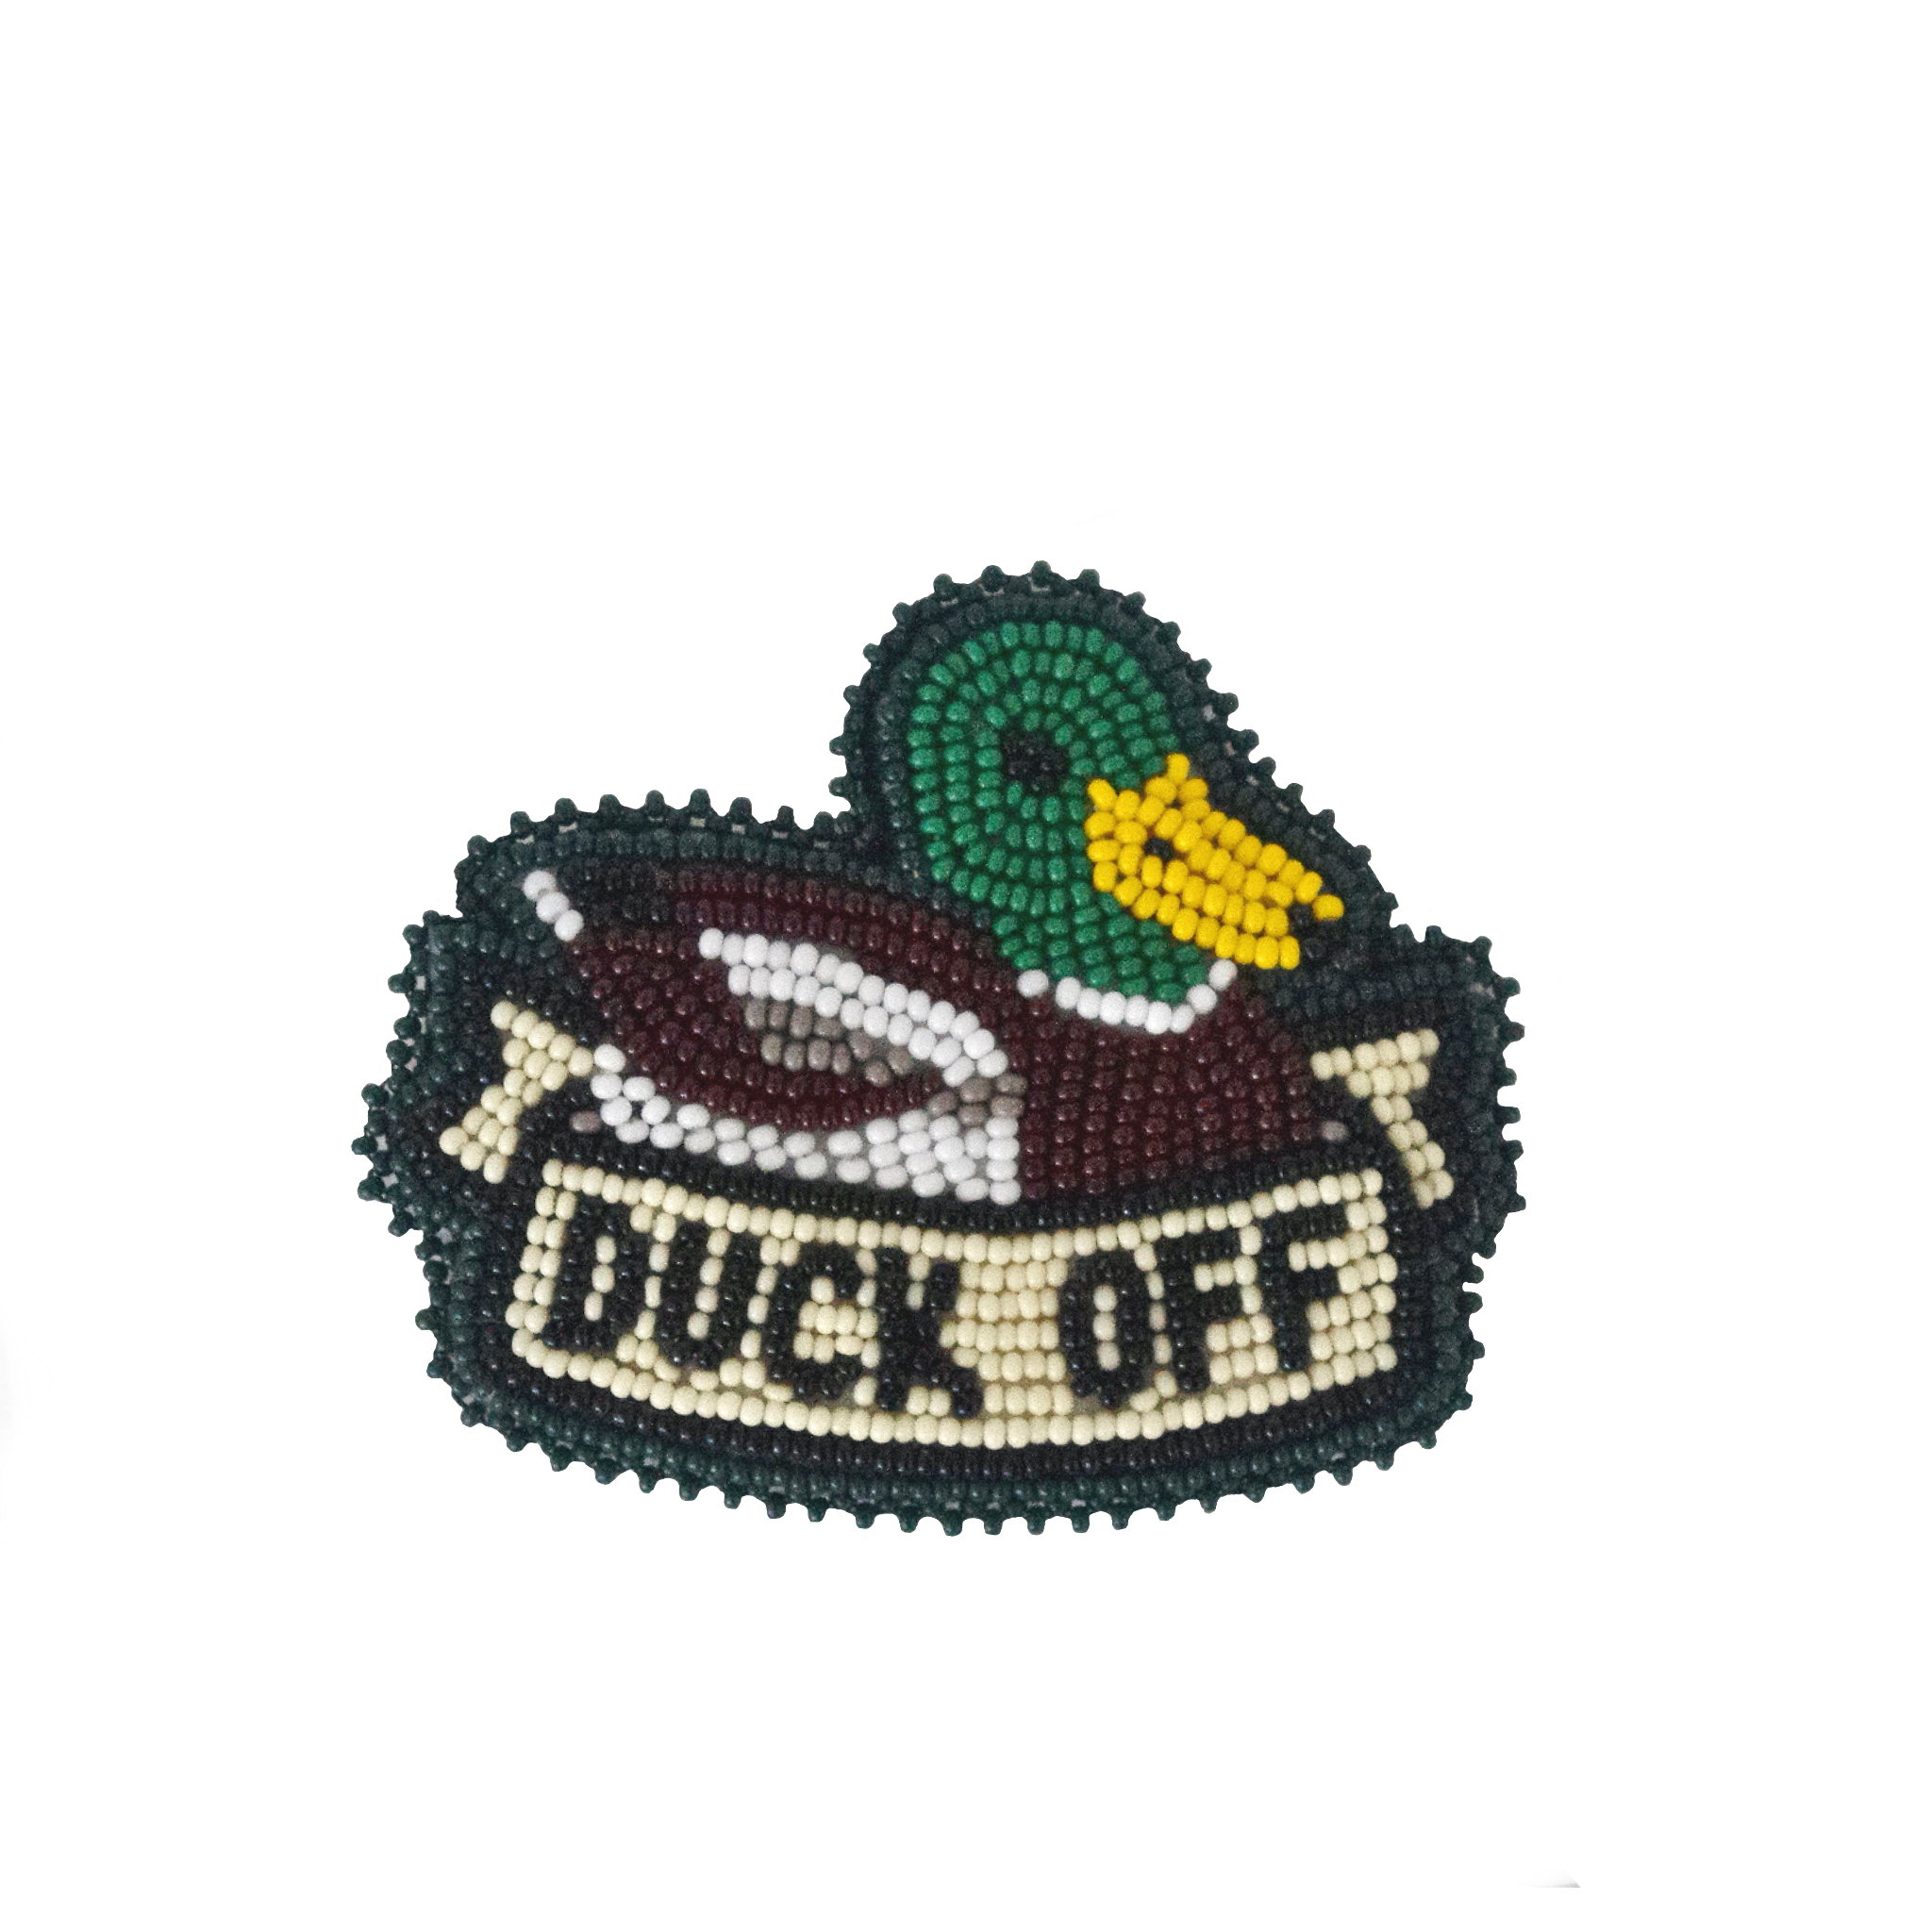 'duck off' sticker